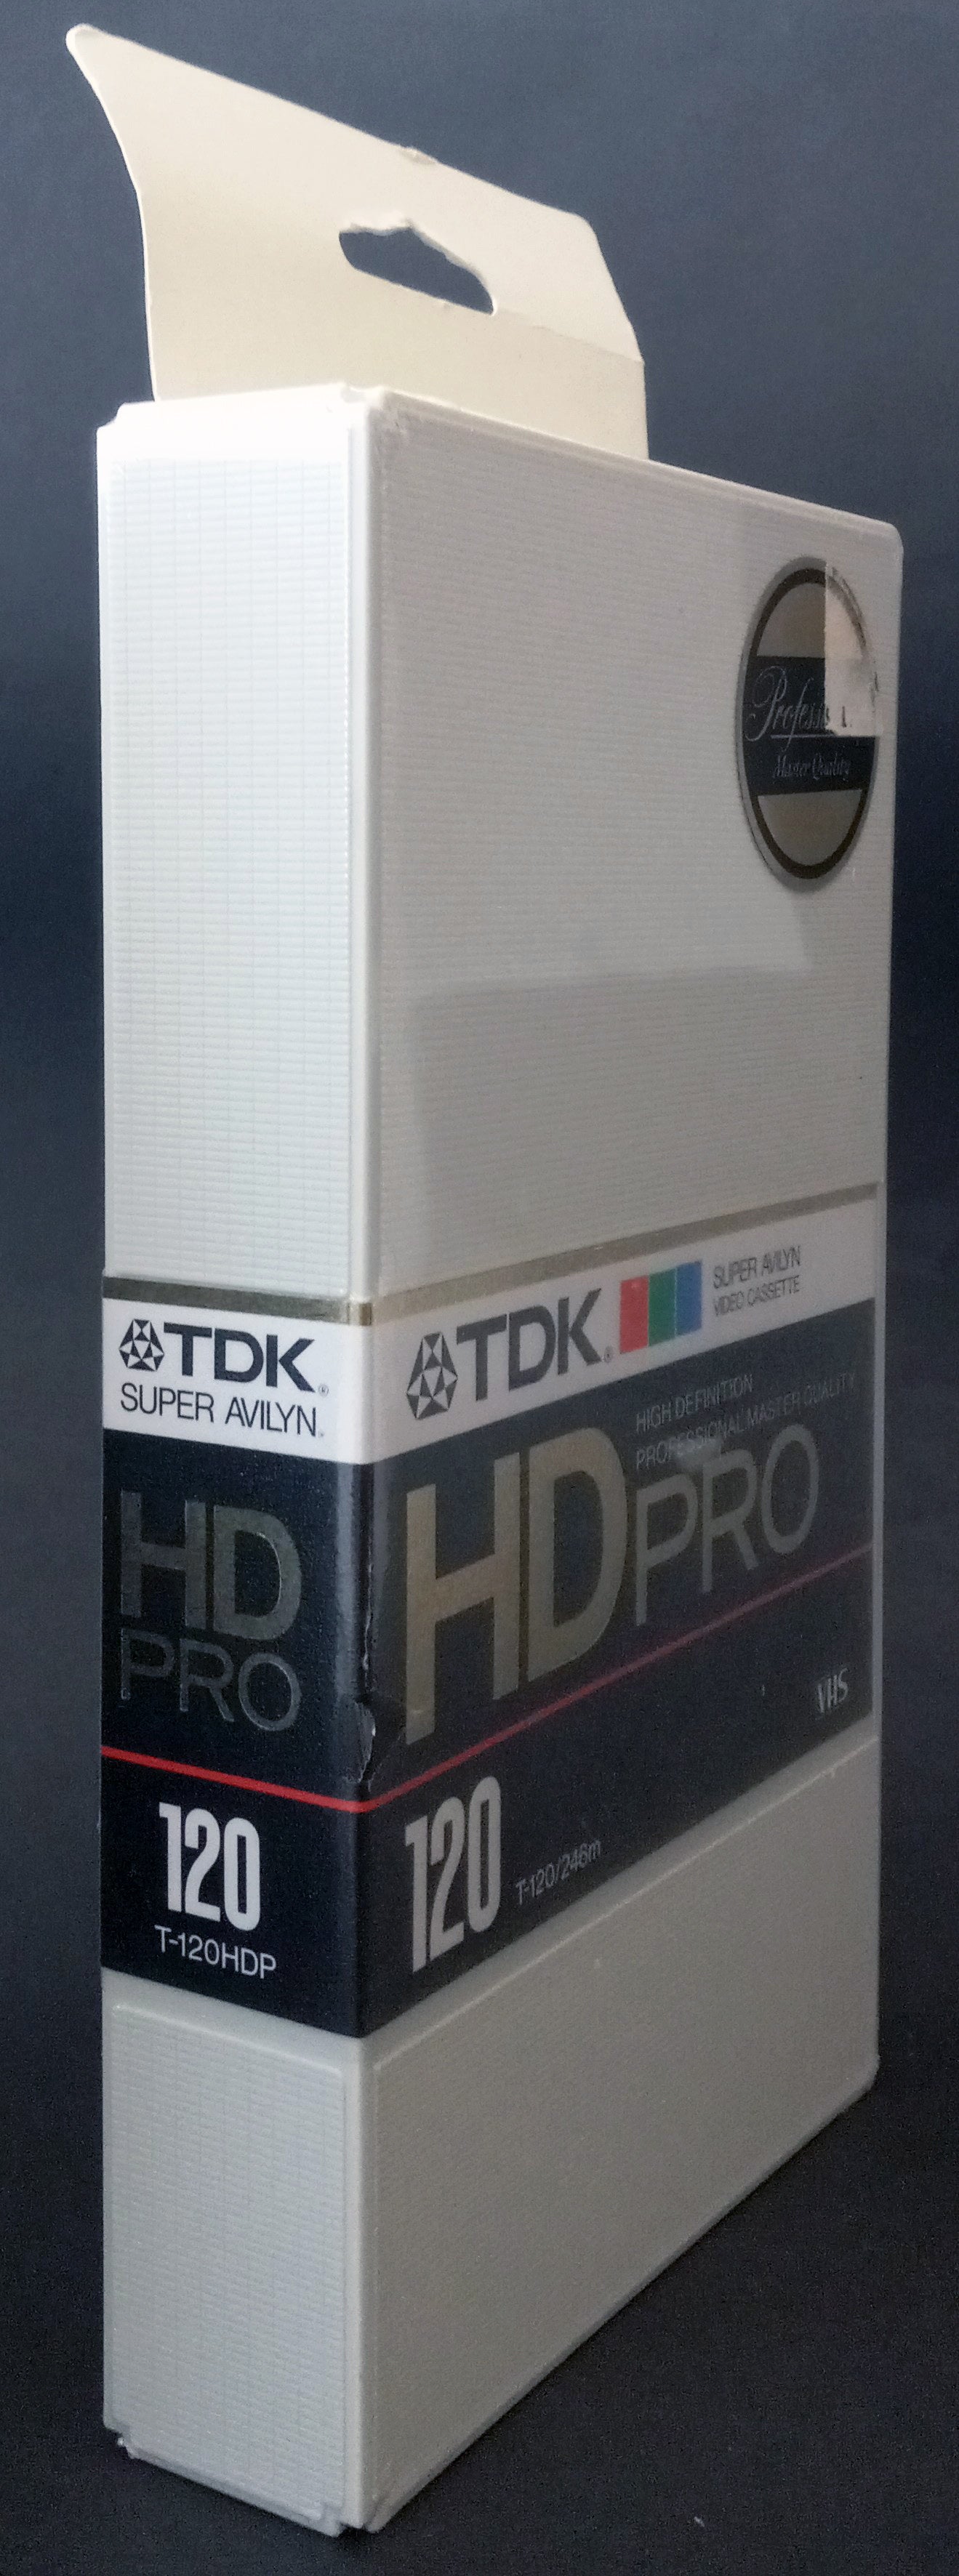 TDK-HD-Pro-Super-Avilyn